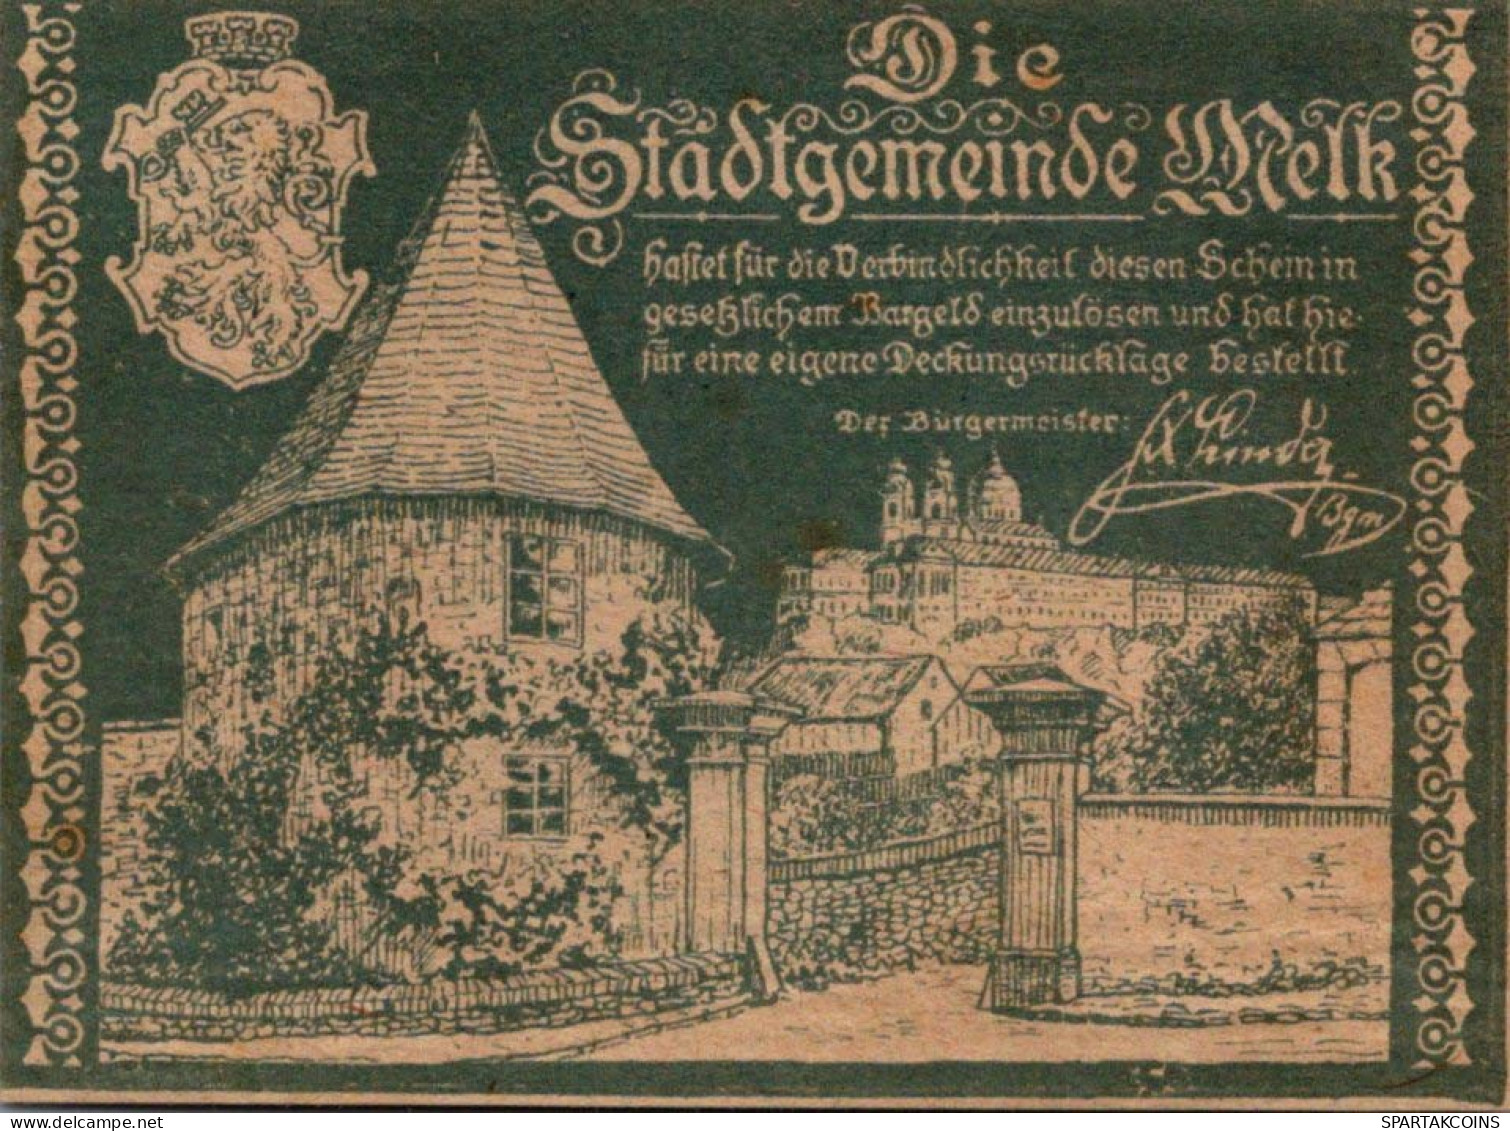 20 HELLER 1920 Stadt MELK Niedrigeren Österreich Notgeld Papiergeld Banknote #PG628 - [11] Emissions Locales